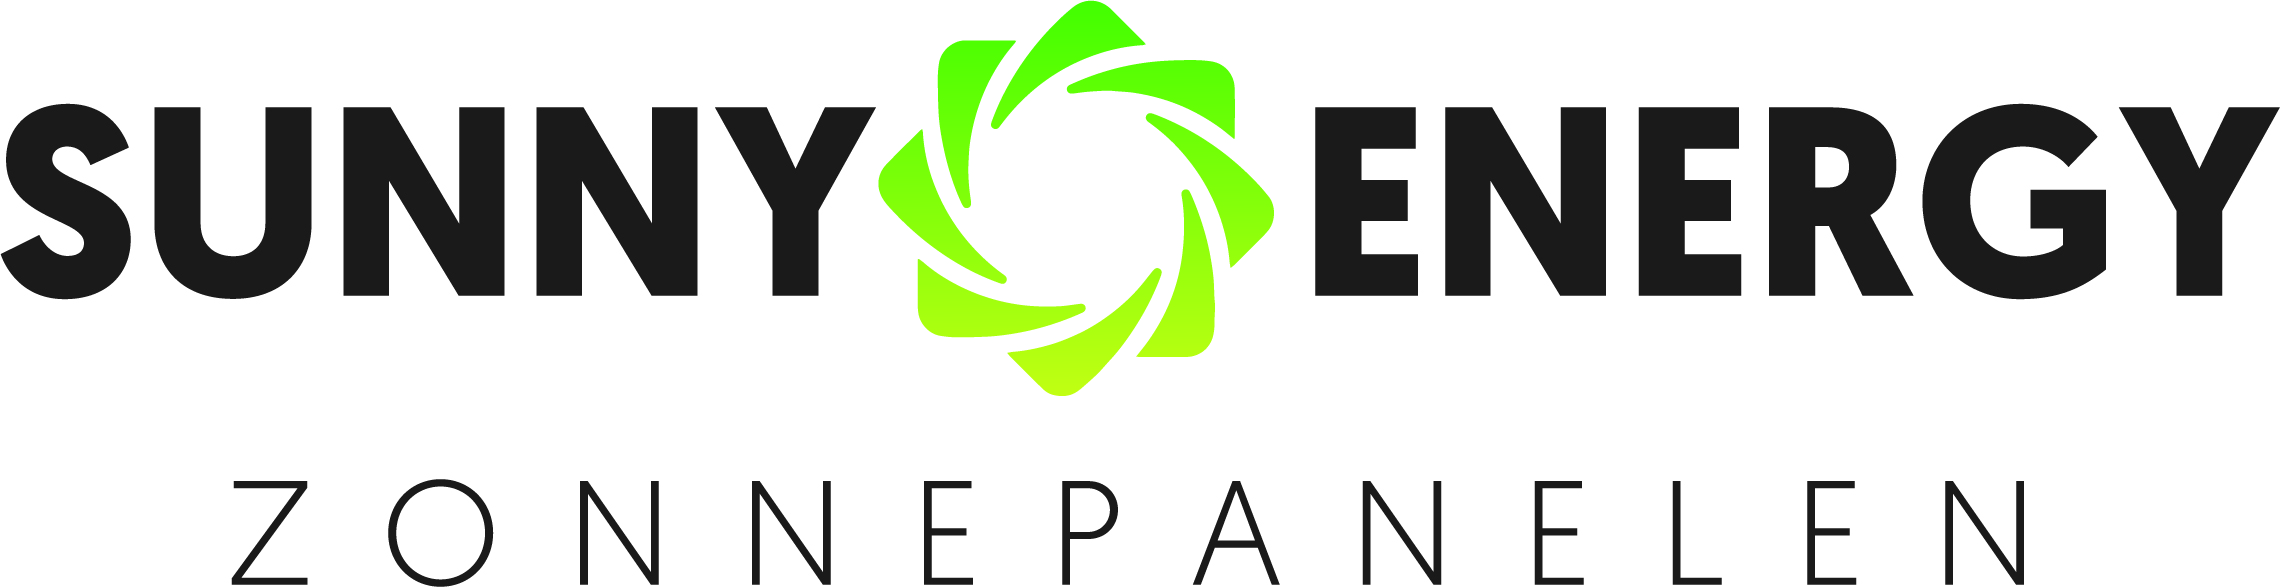 Sunny Energy Zonnepanelen BV logo